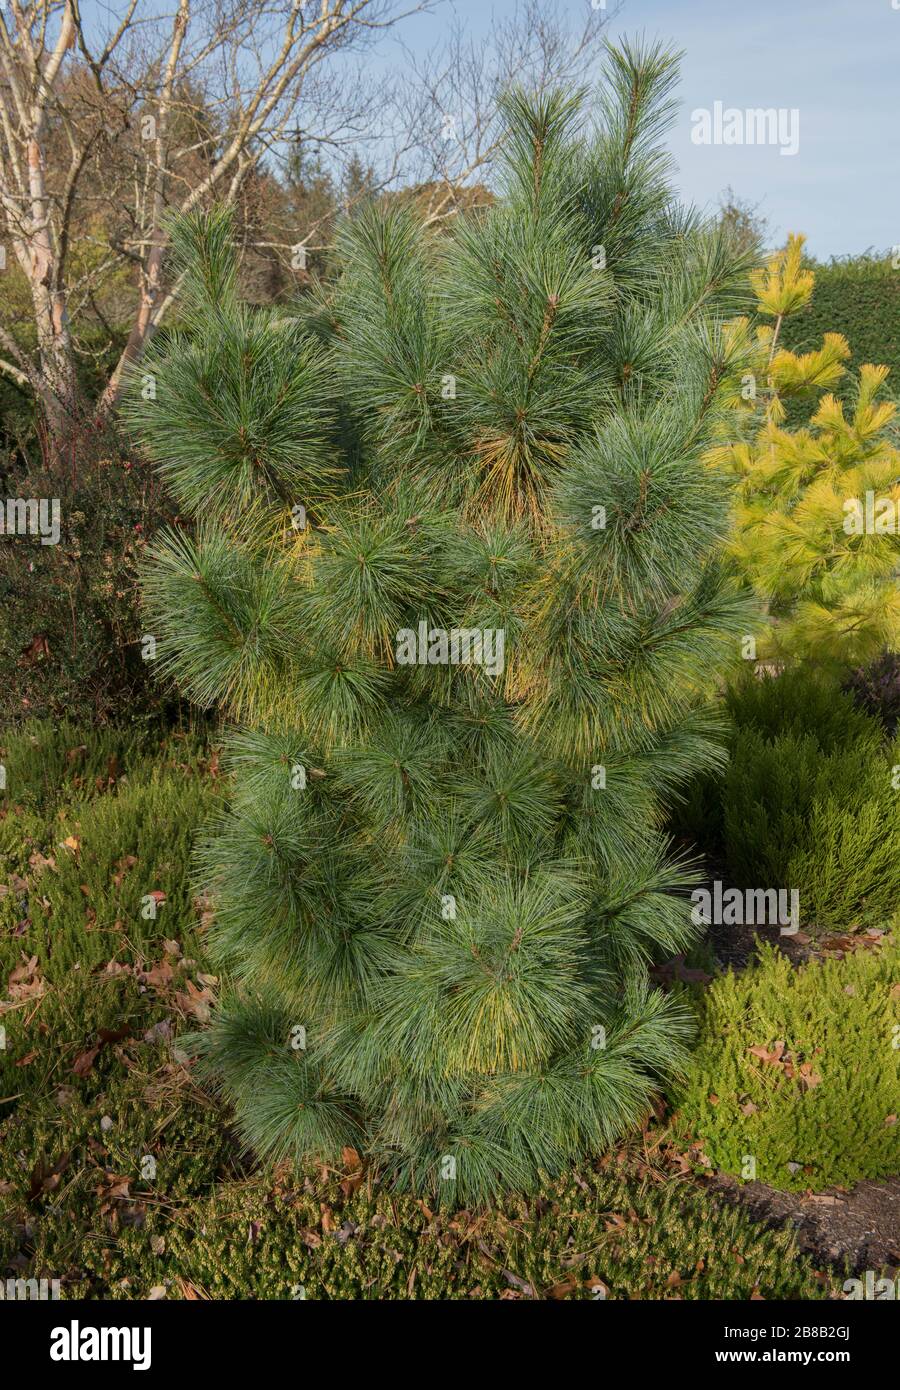 Green Foliage and Cones of Schwerin's Dwarf Conifer Pine Tree (Pinus x schwerinii 'Wiethorst') in a Garden in Rural Devon, England, UK Stock Photo